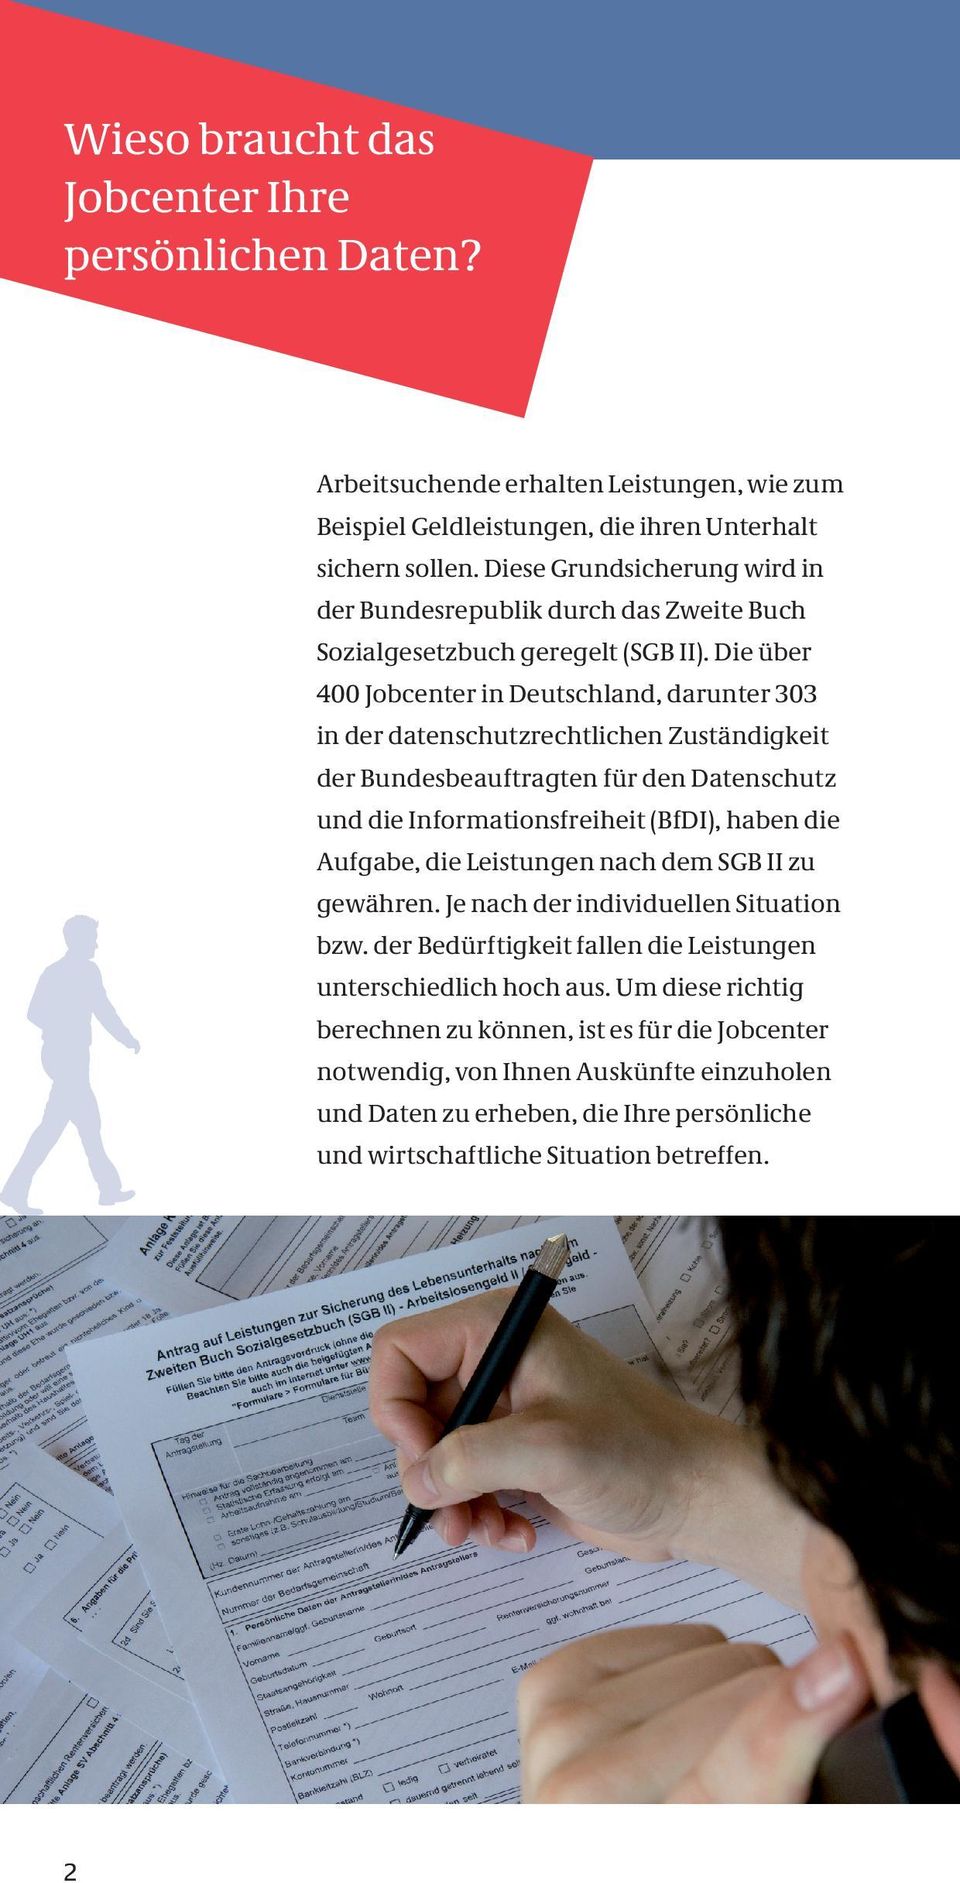 Die über 400 Jobcenter in Deutschland, darunter 303 in der datenschutzrechtlichen Zuständigkeit der Bundesbeauftragten für den Datenschutz und die Informationsfreiheit (BfDI), haben die Aufgabe, die